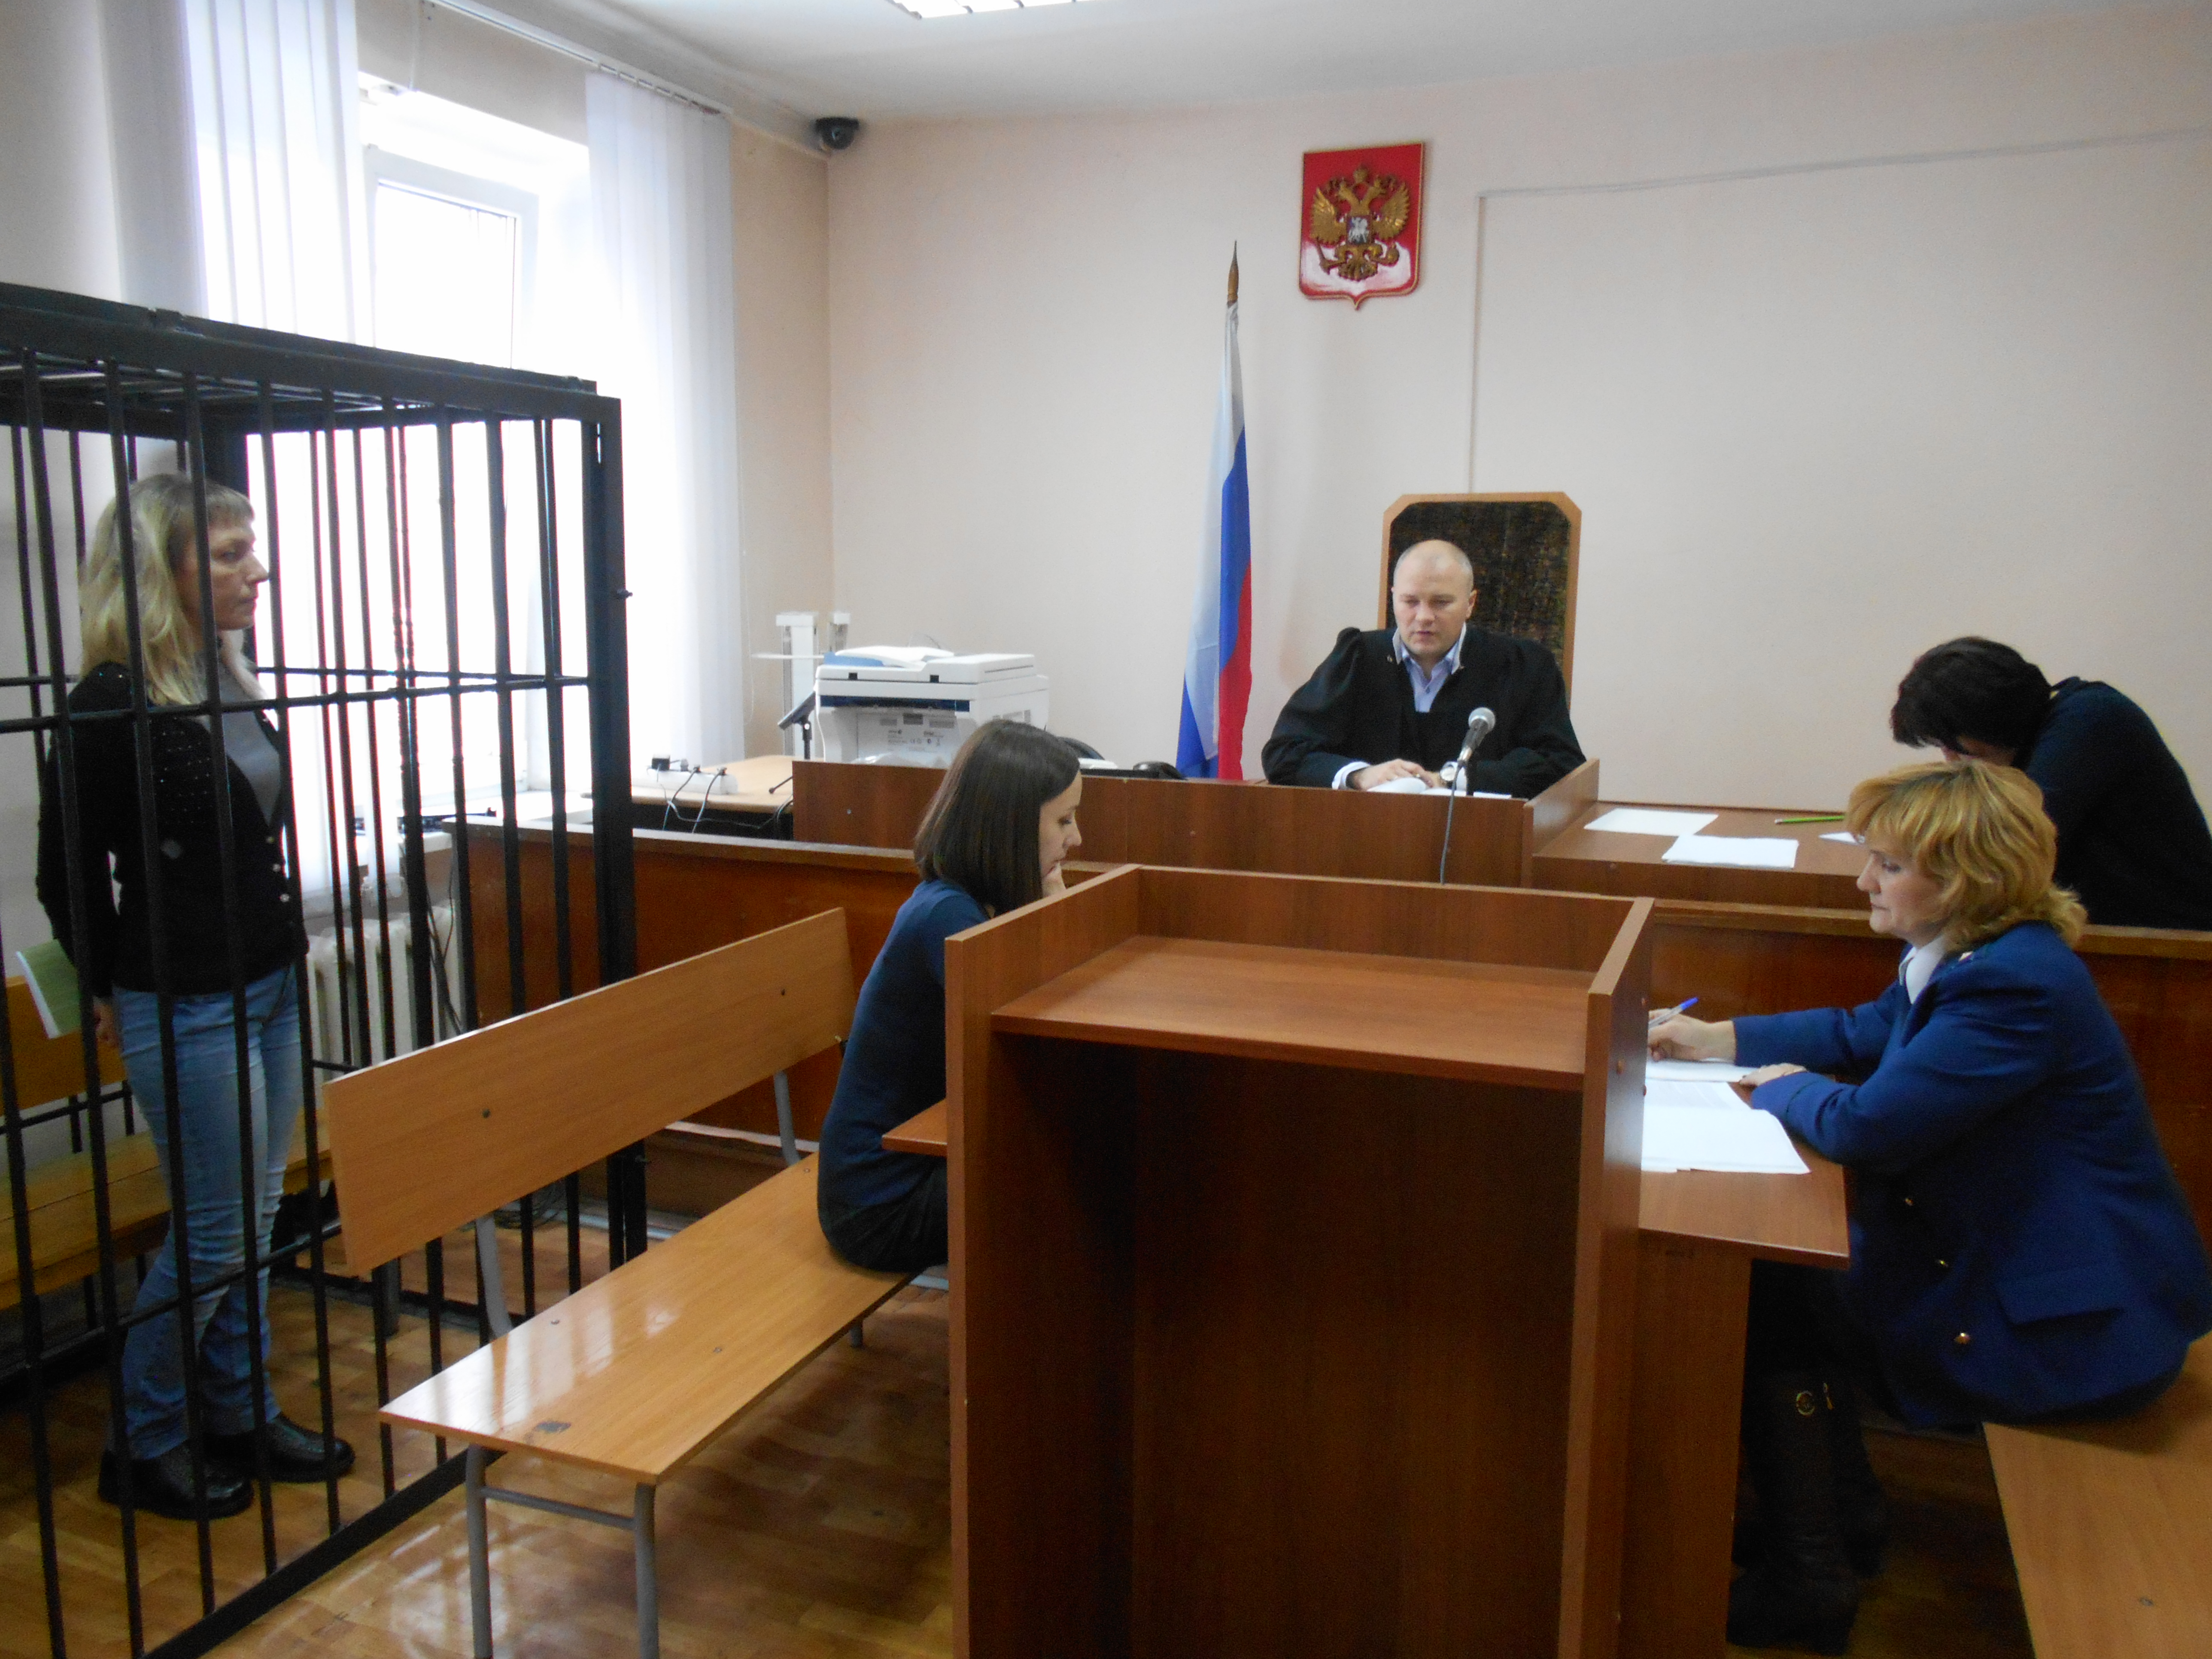 Сайт новокузнецкого районного суда